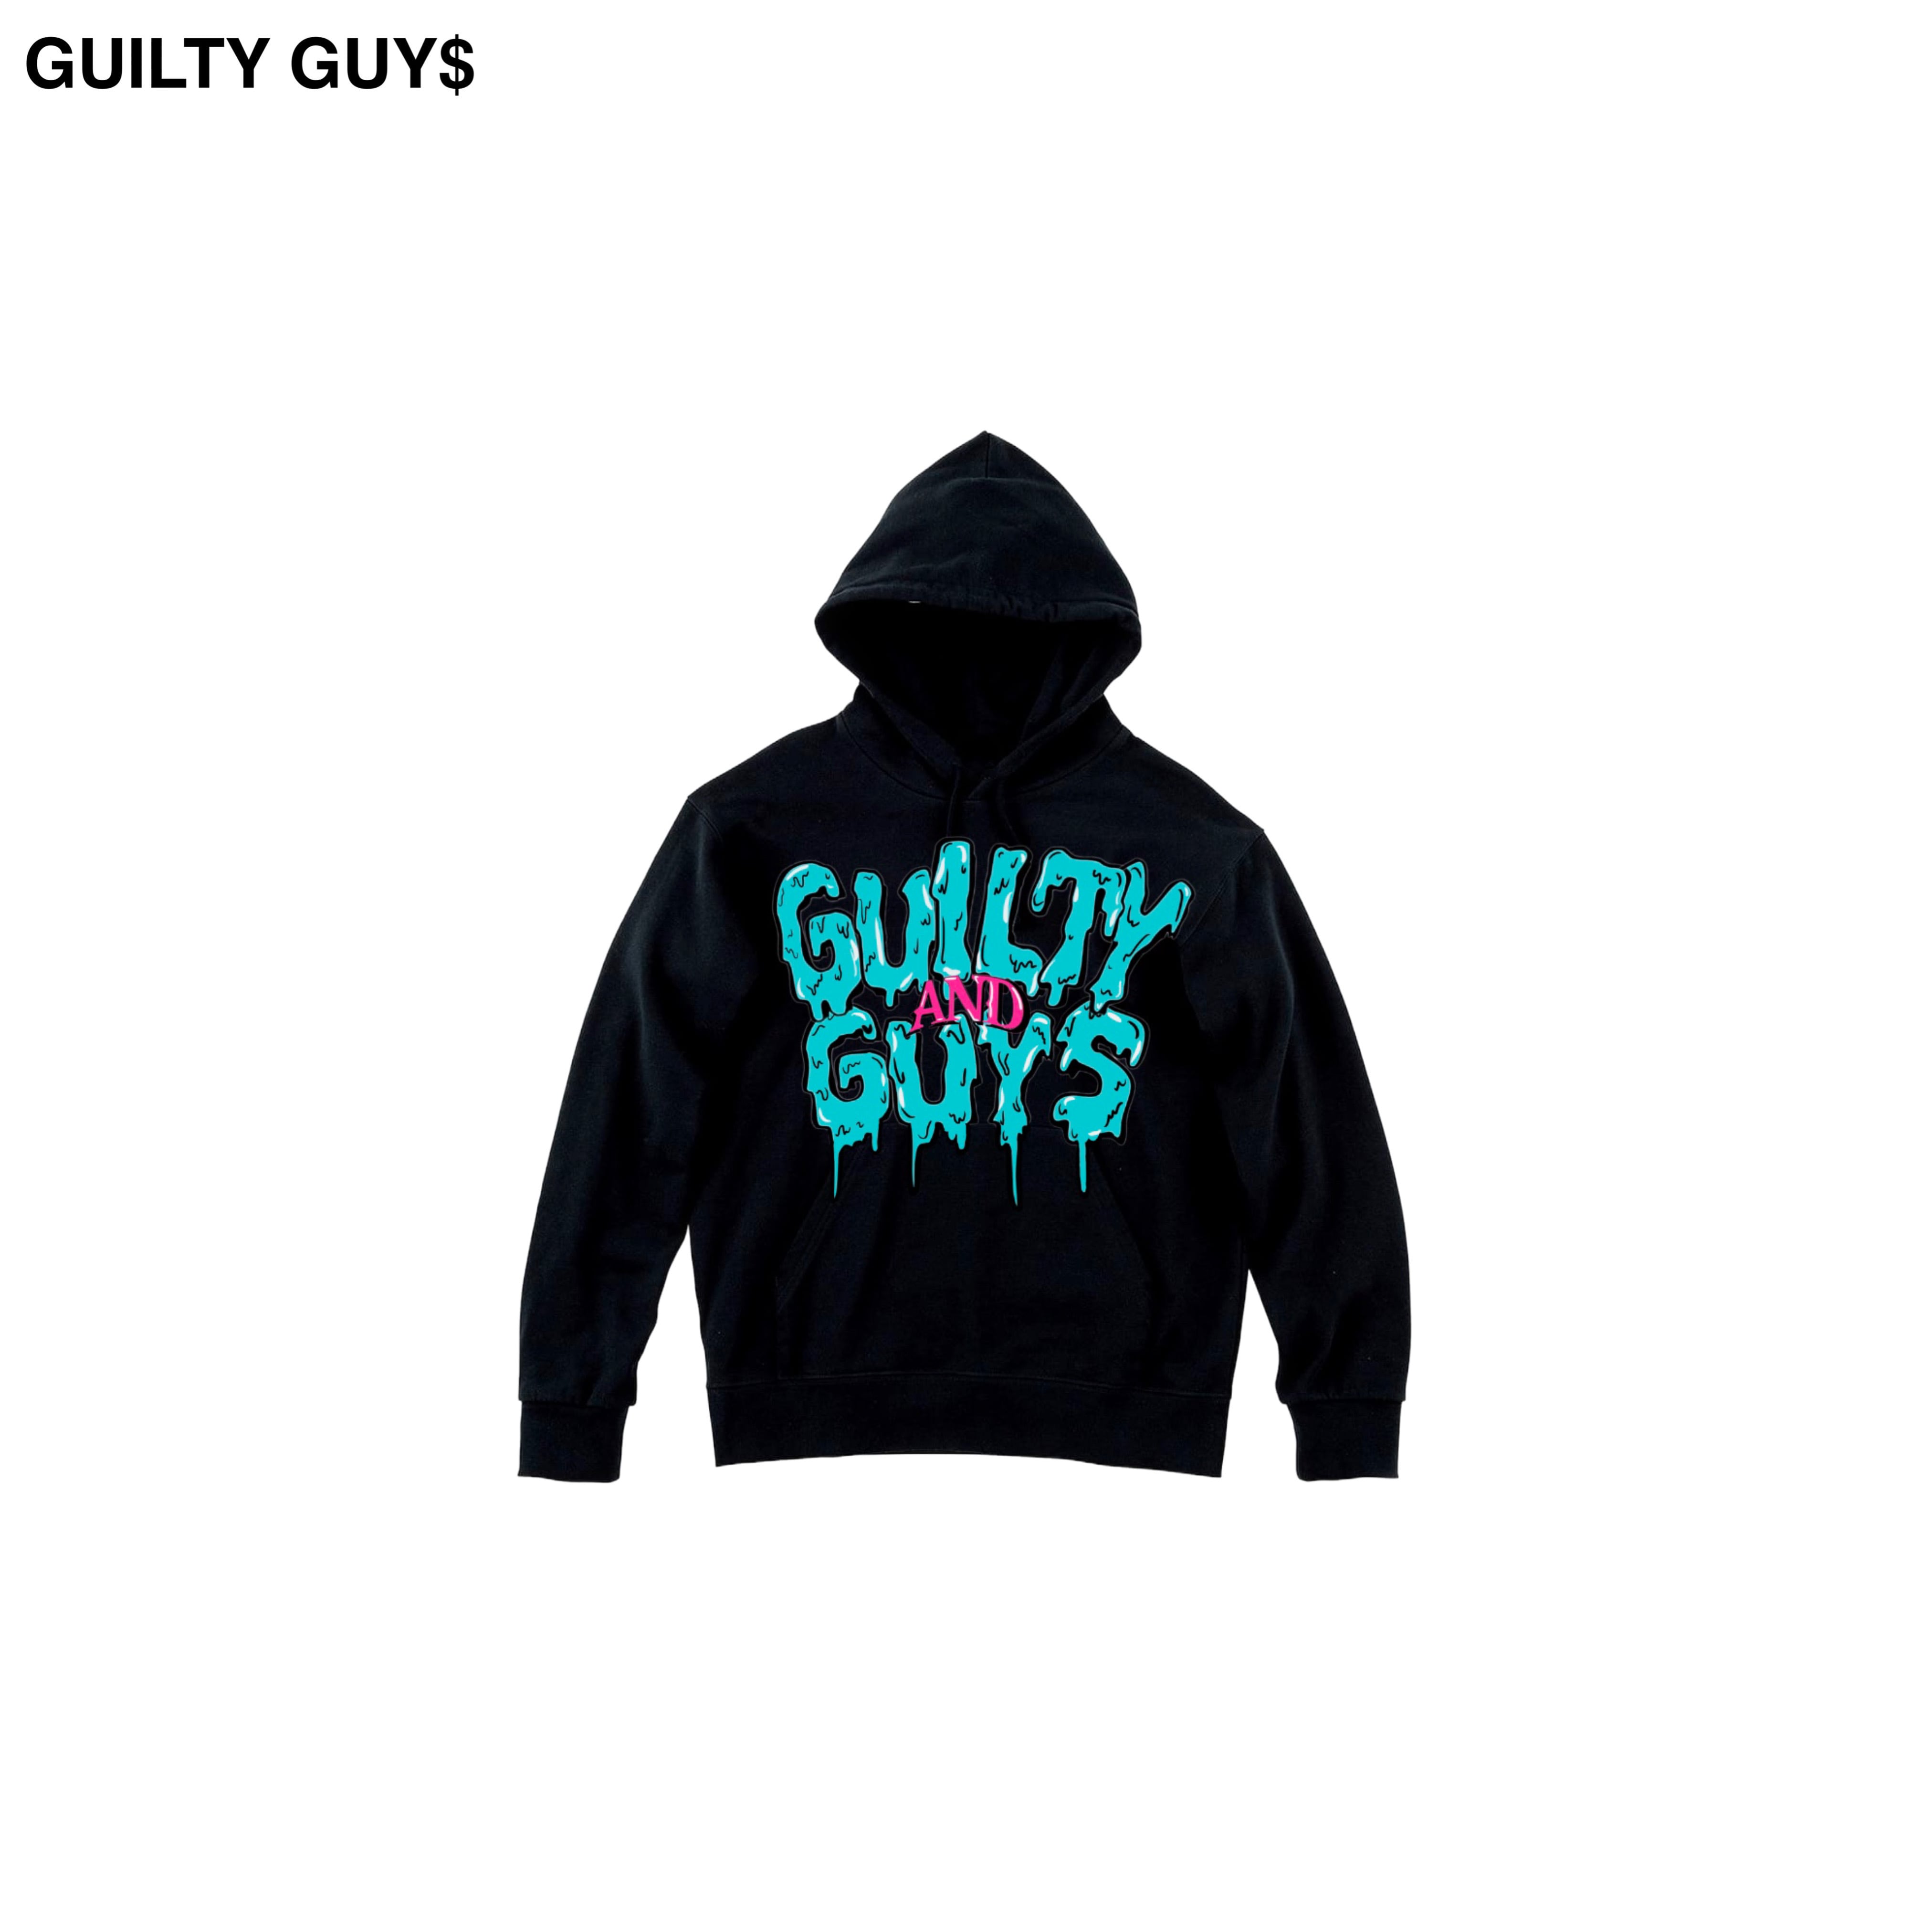 GUILTY GUY$